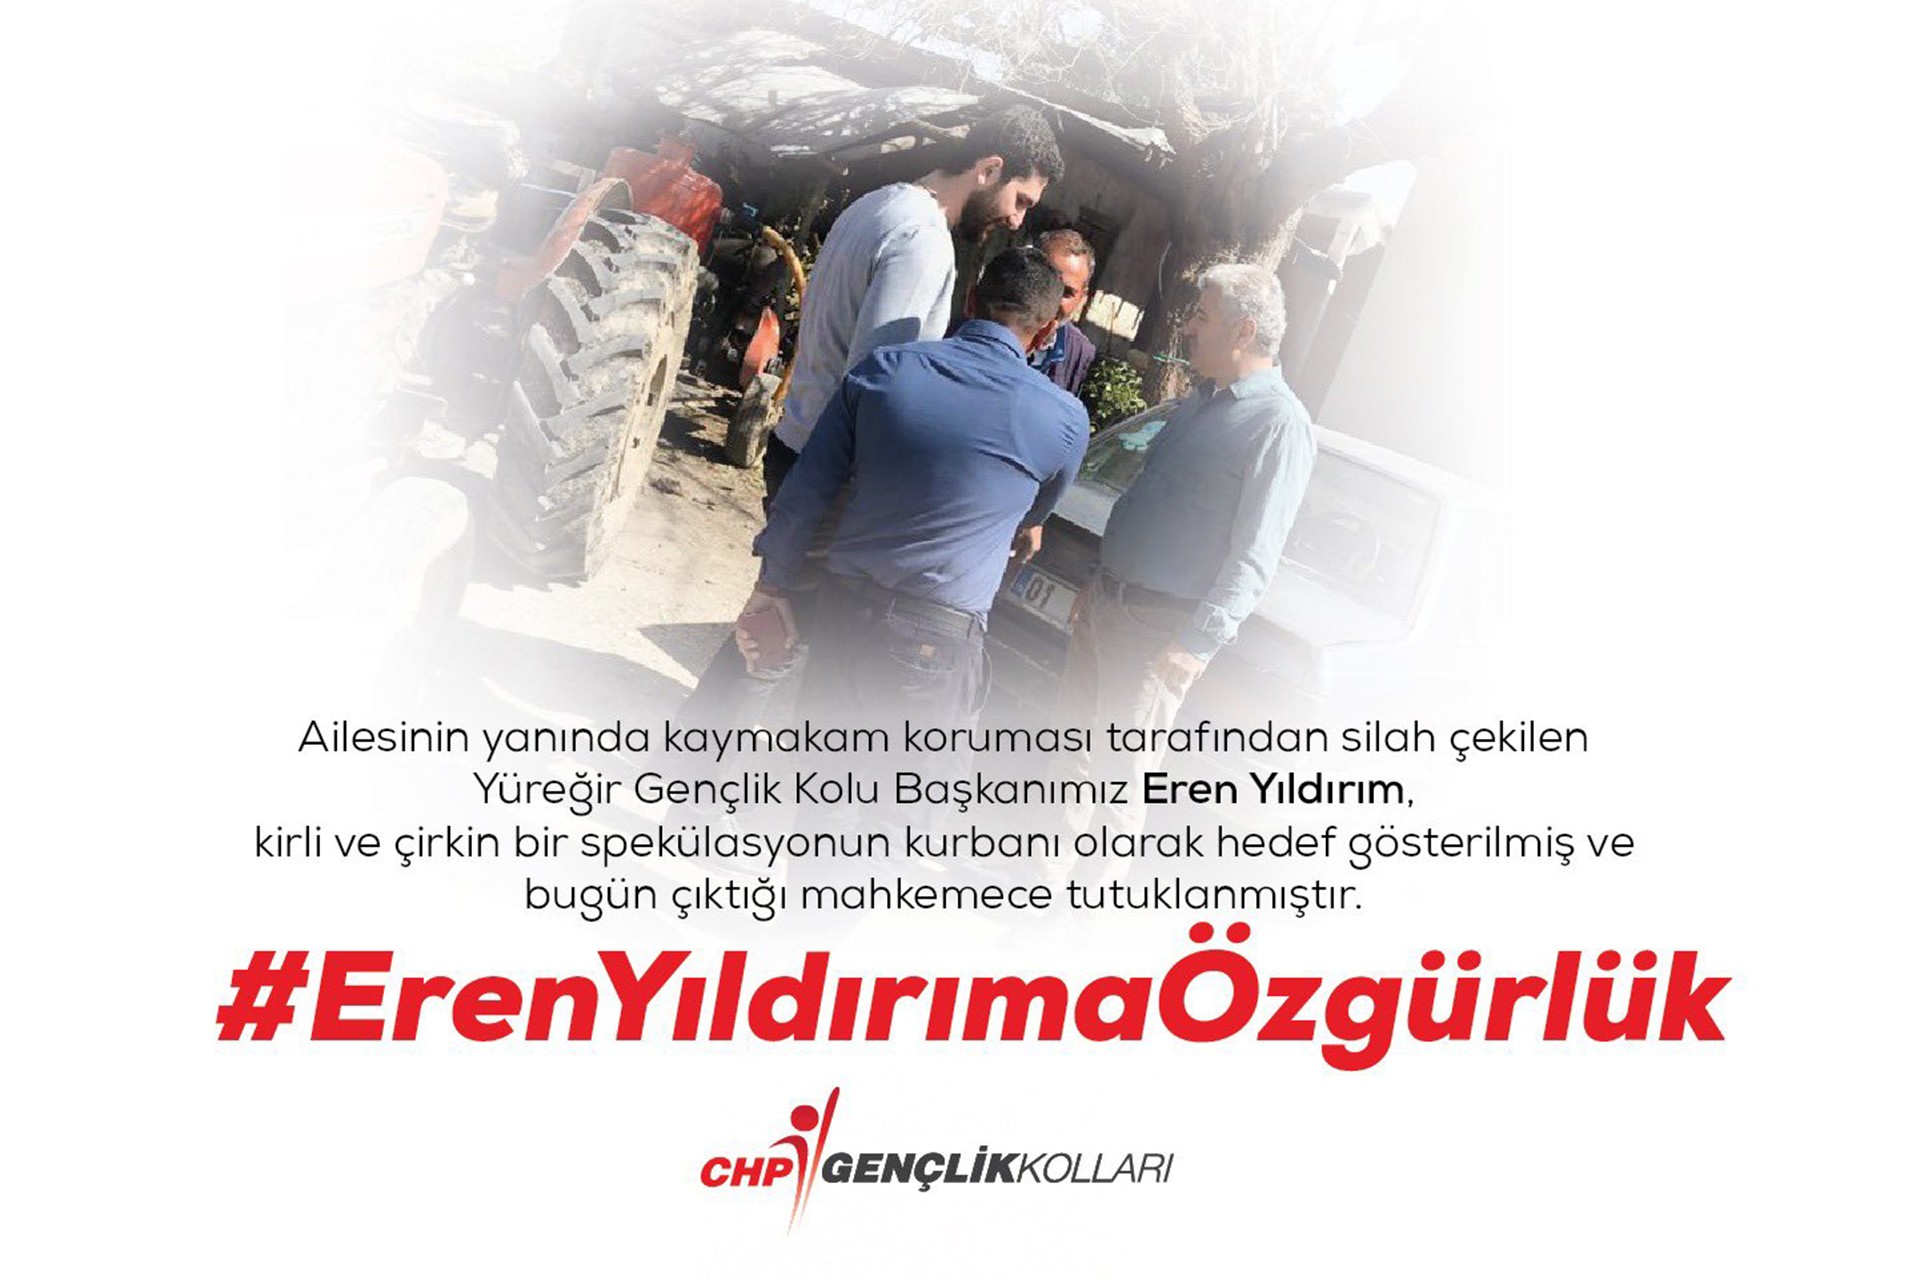 CHP Gençlik Kollarının Eren Yıldırım'ın tutuklanmasının ardından Twitter hesabından paylaştığı #ErenYıldırımaÖzgürlük yazılı görsel.